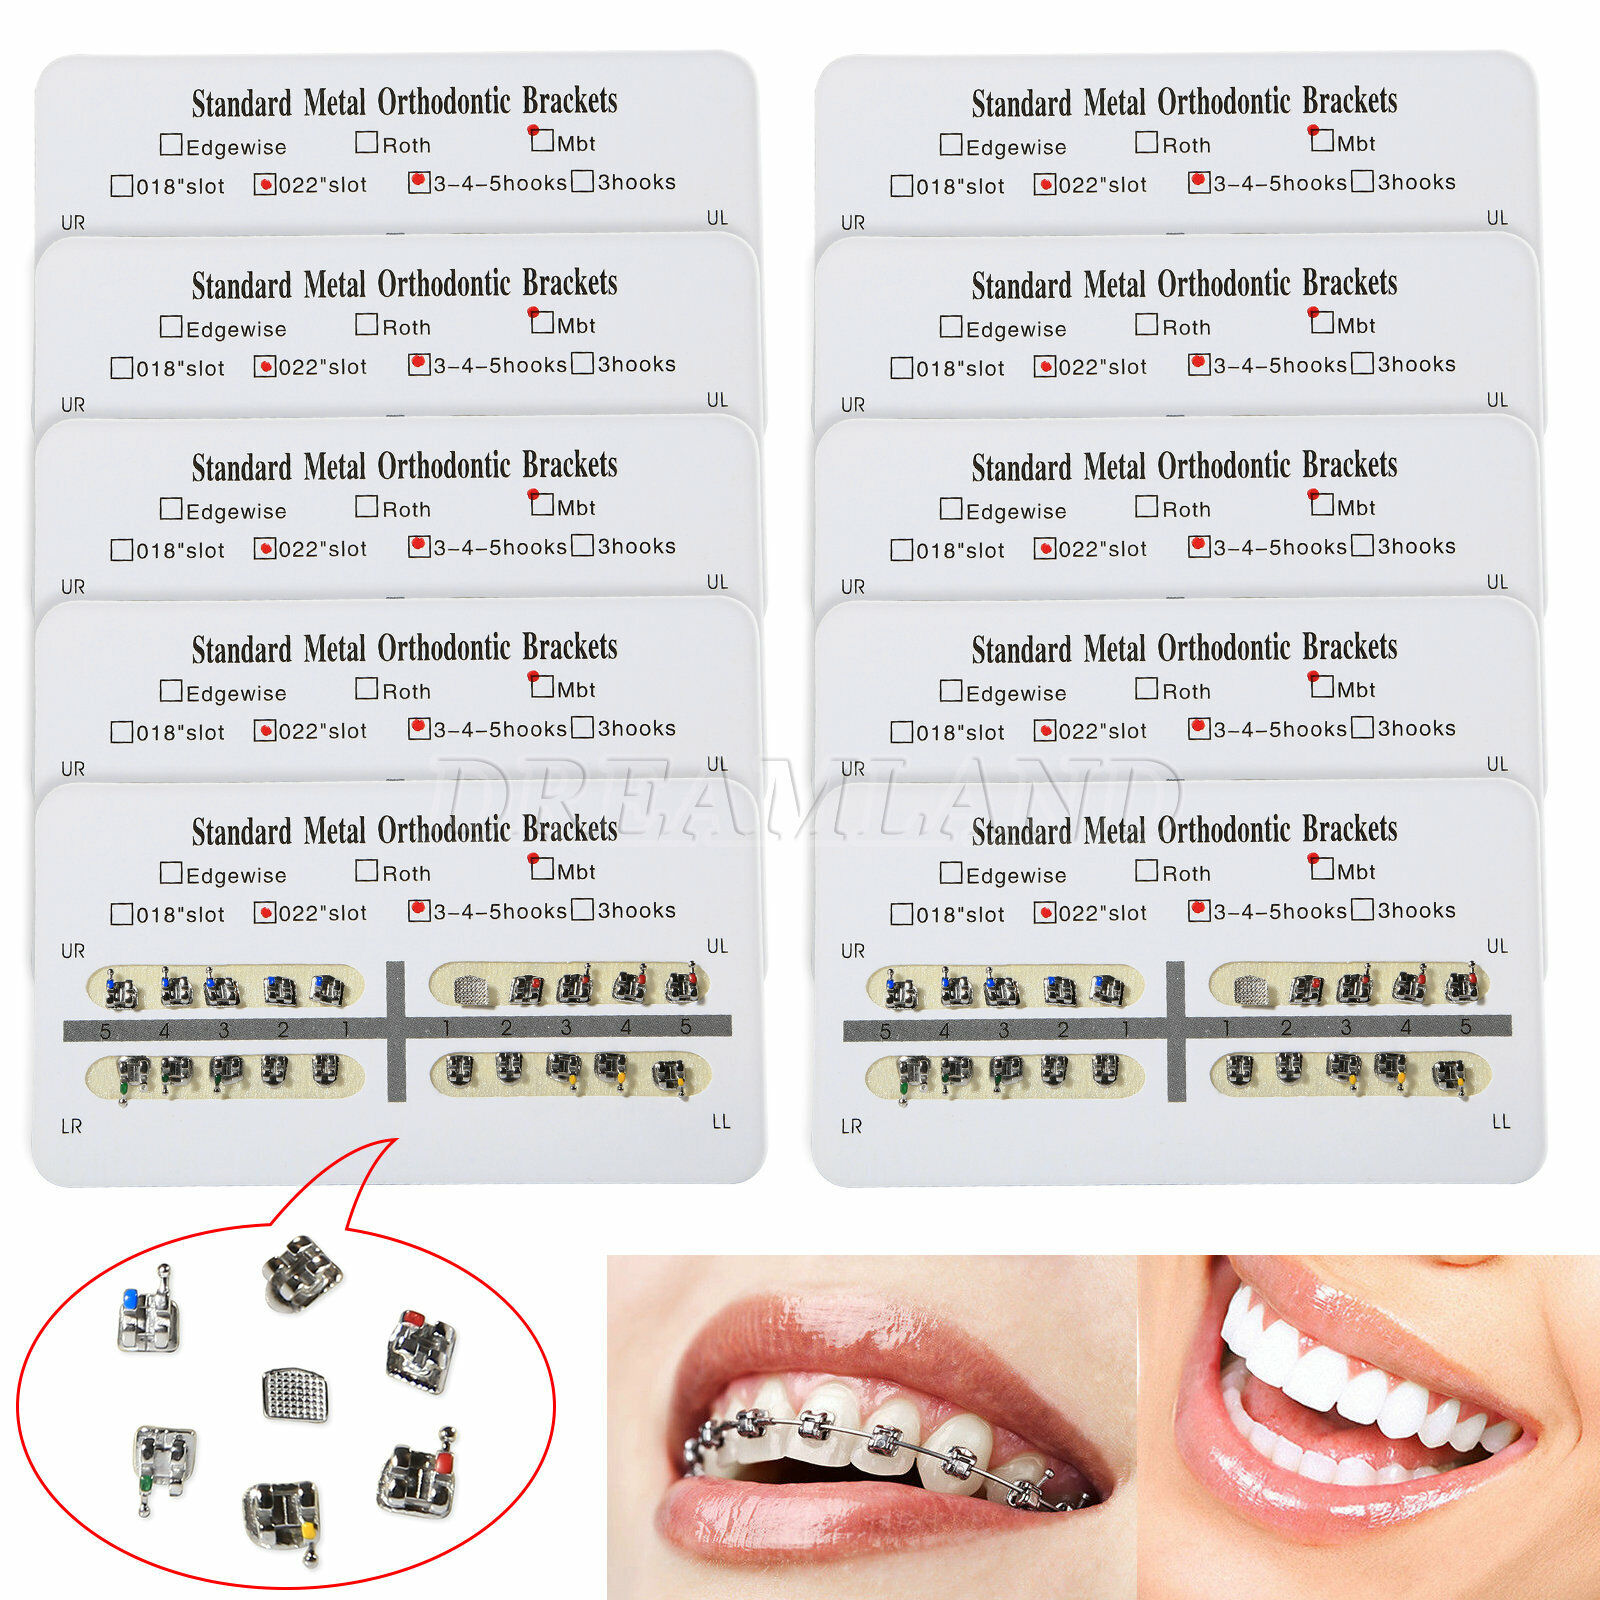 Dentist Orthodontic Brackets Braces Standard MBT 0.022 Slot 345hooks OEM